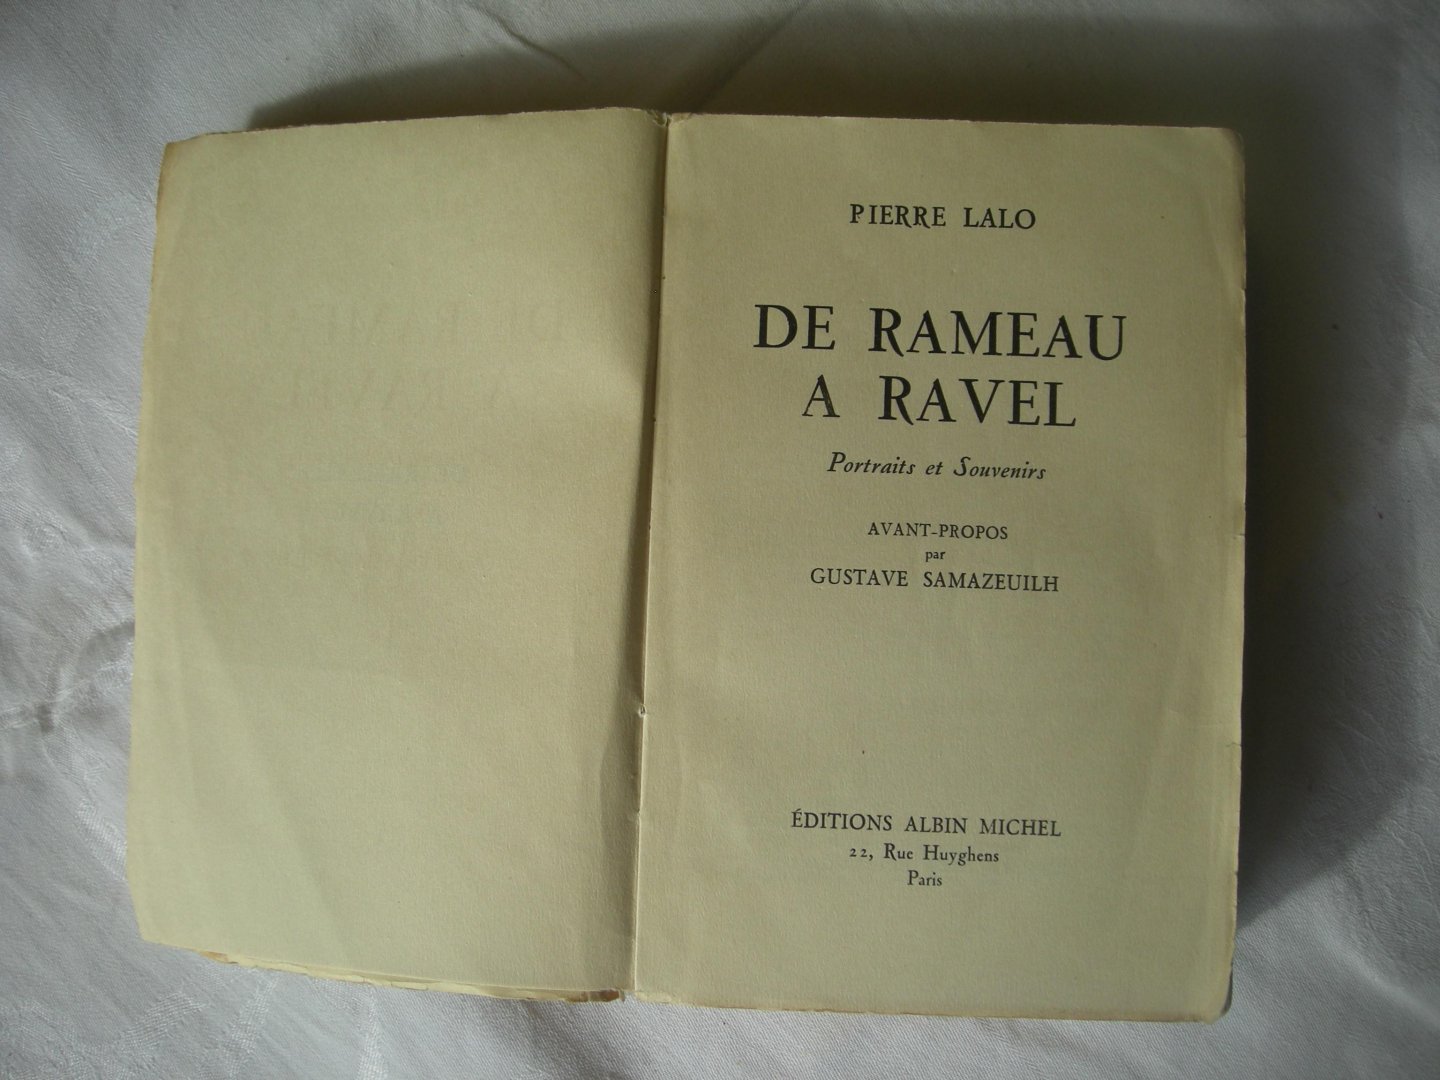 Lalo, Pierre / Samazeuilh, G. avant-propos - De Rameau a Ravel. Portraits et Souvenirs